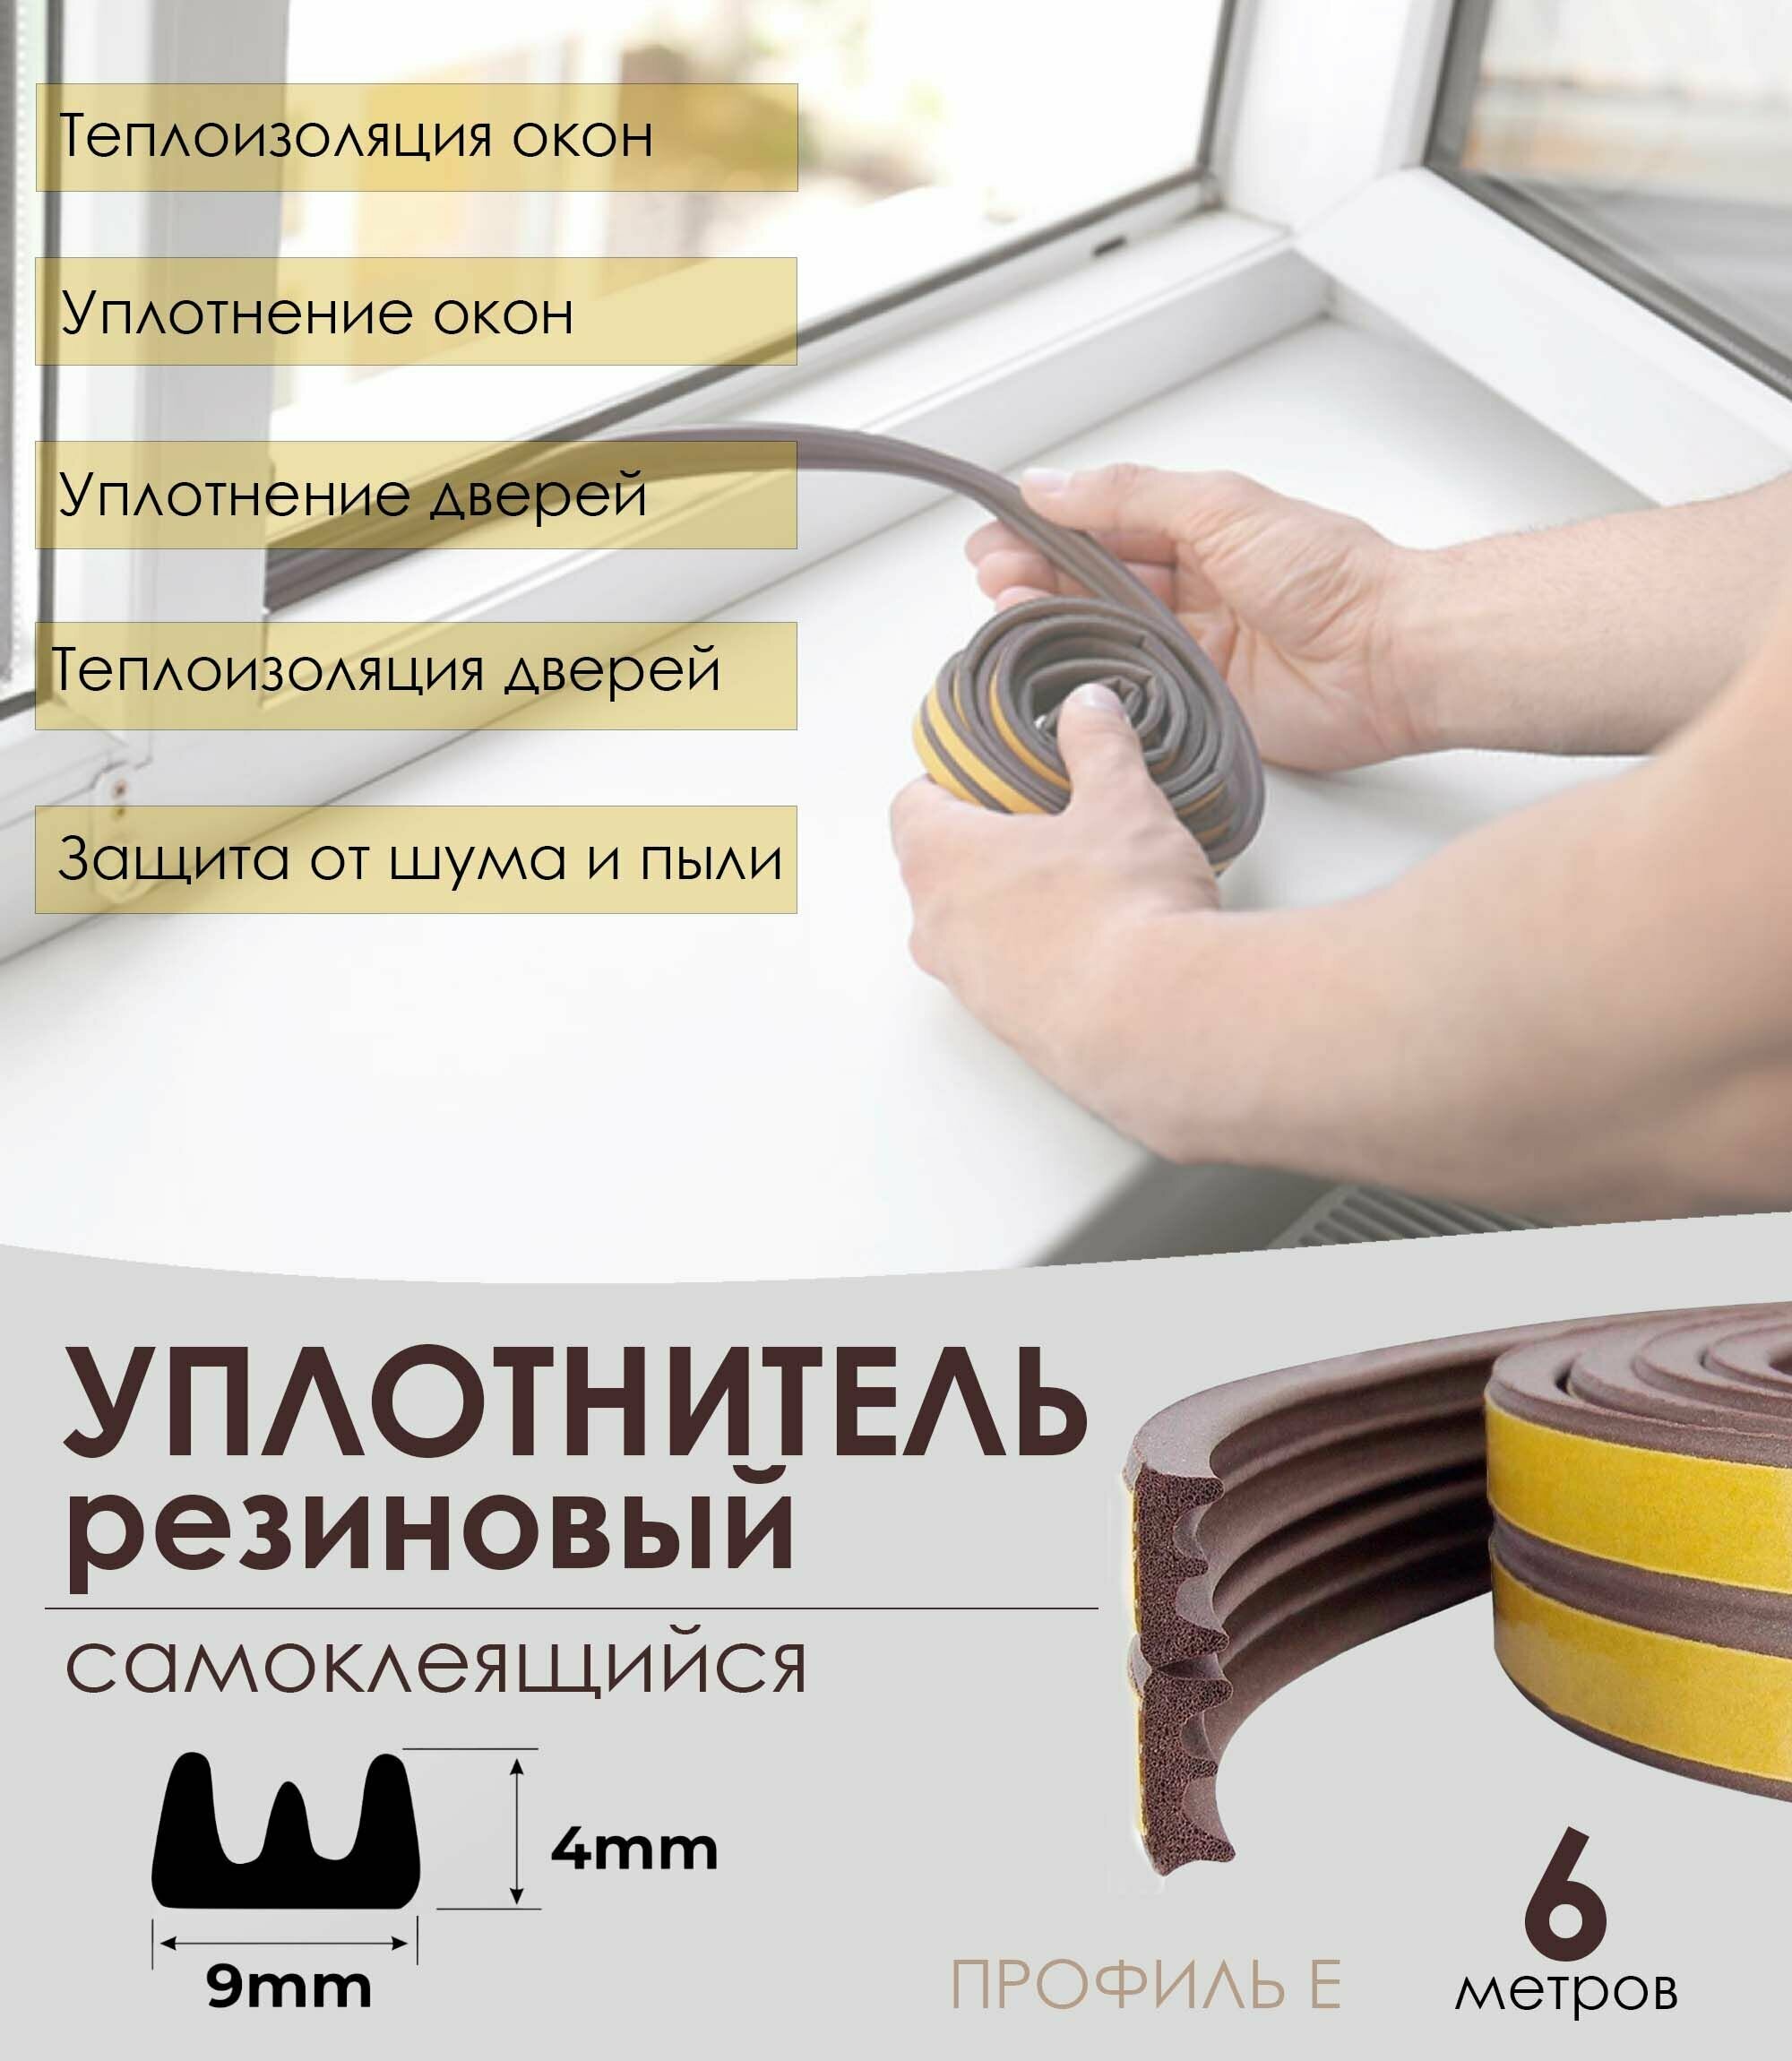 Уплотнитель резиновый самоклеящийся для окон и дверей коричневый 4х9 мм (профиль Е) 6 метров - 1 рулон